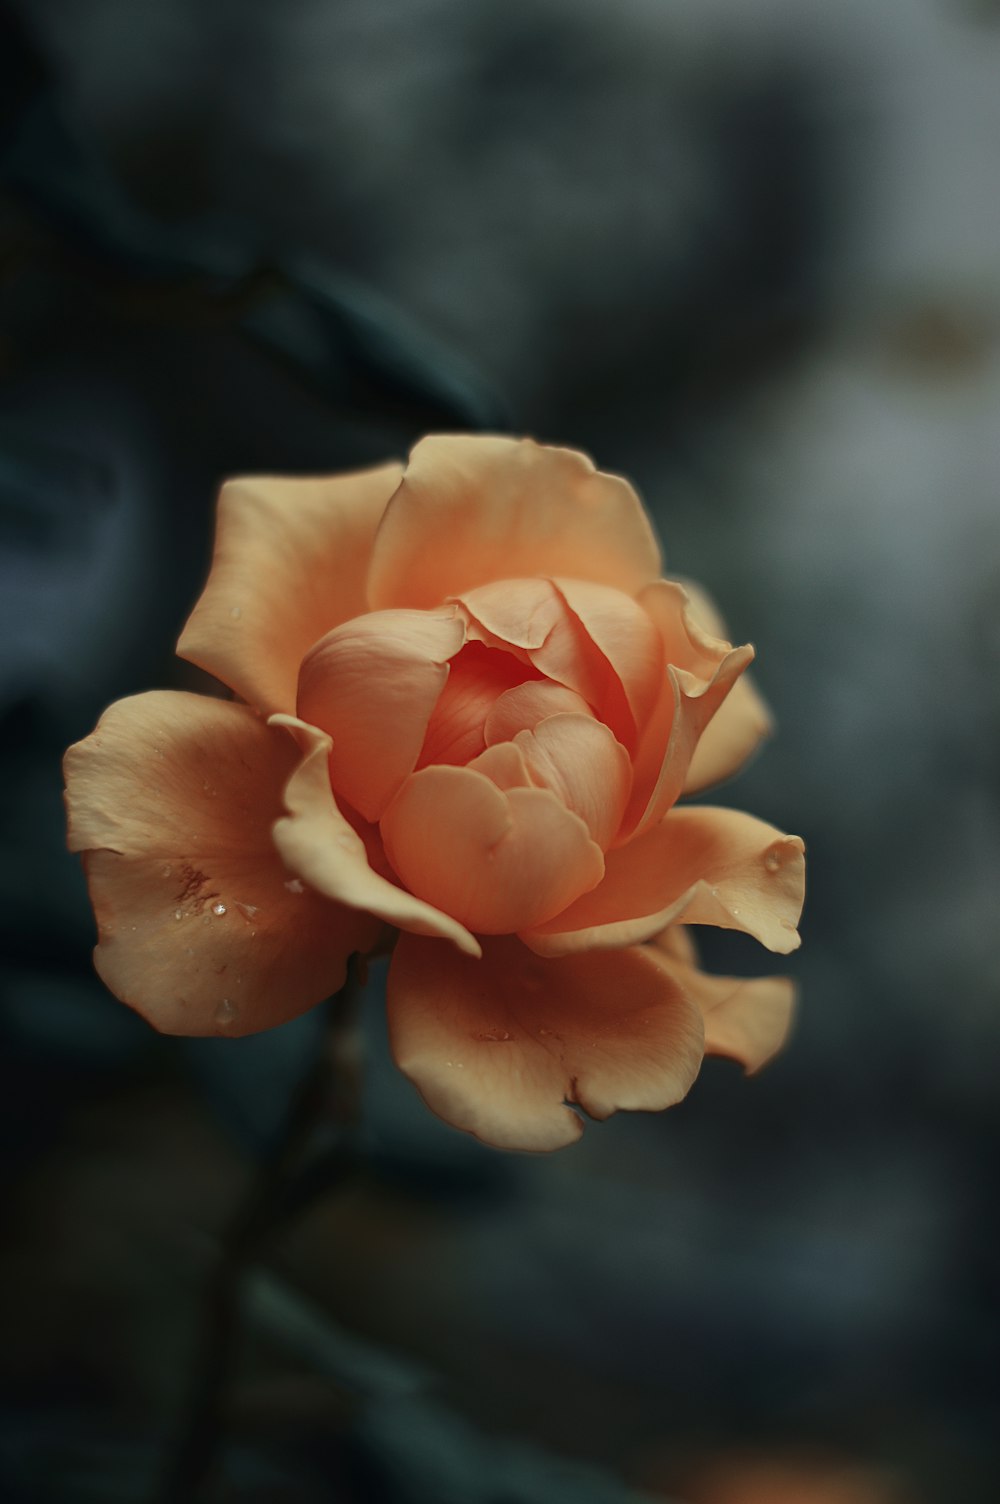 fotografia ravvicinata fiore petalo arancione